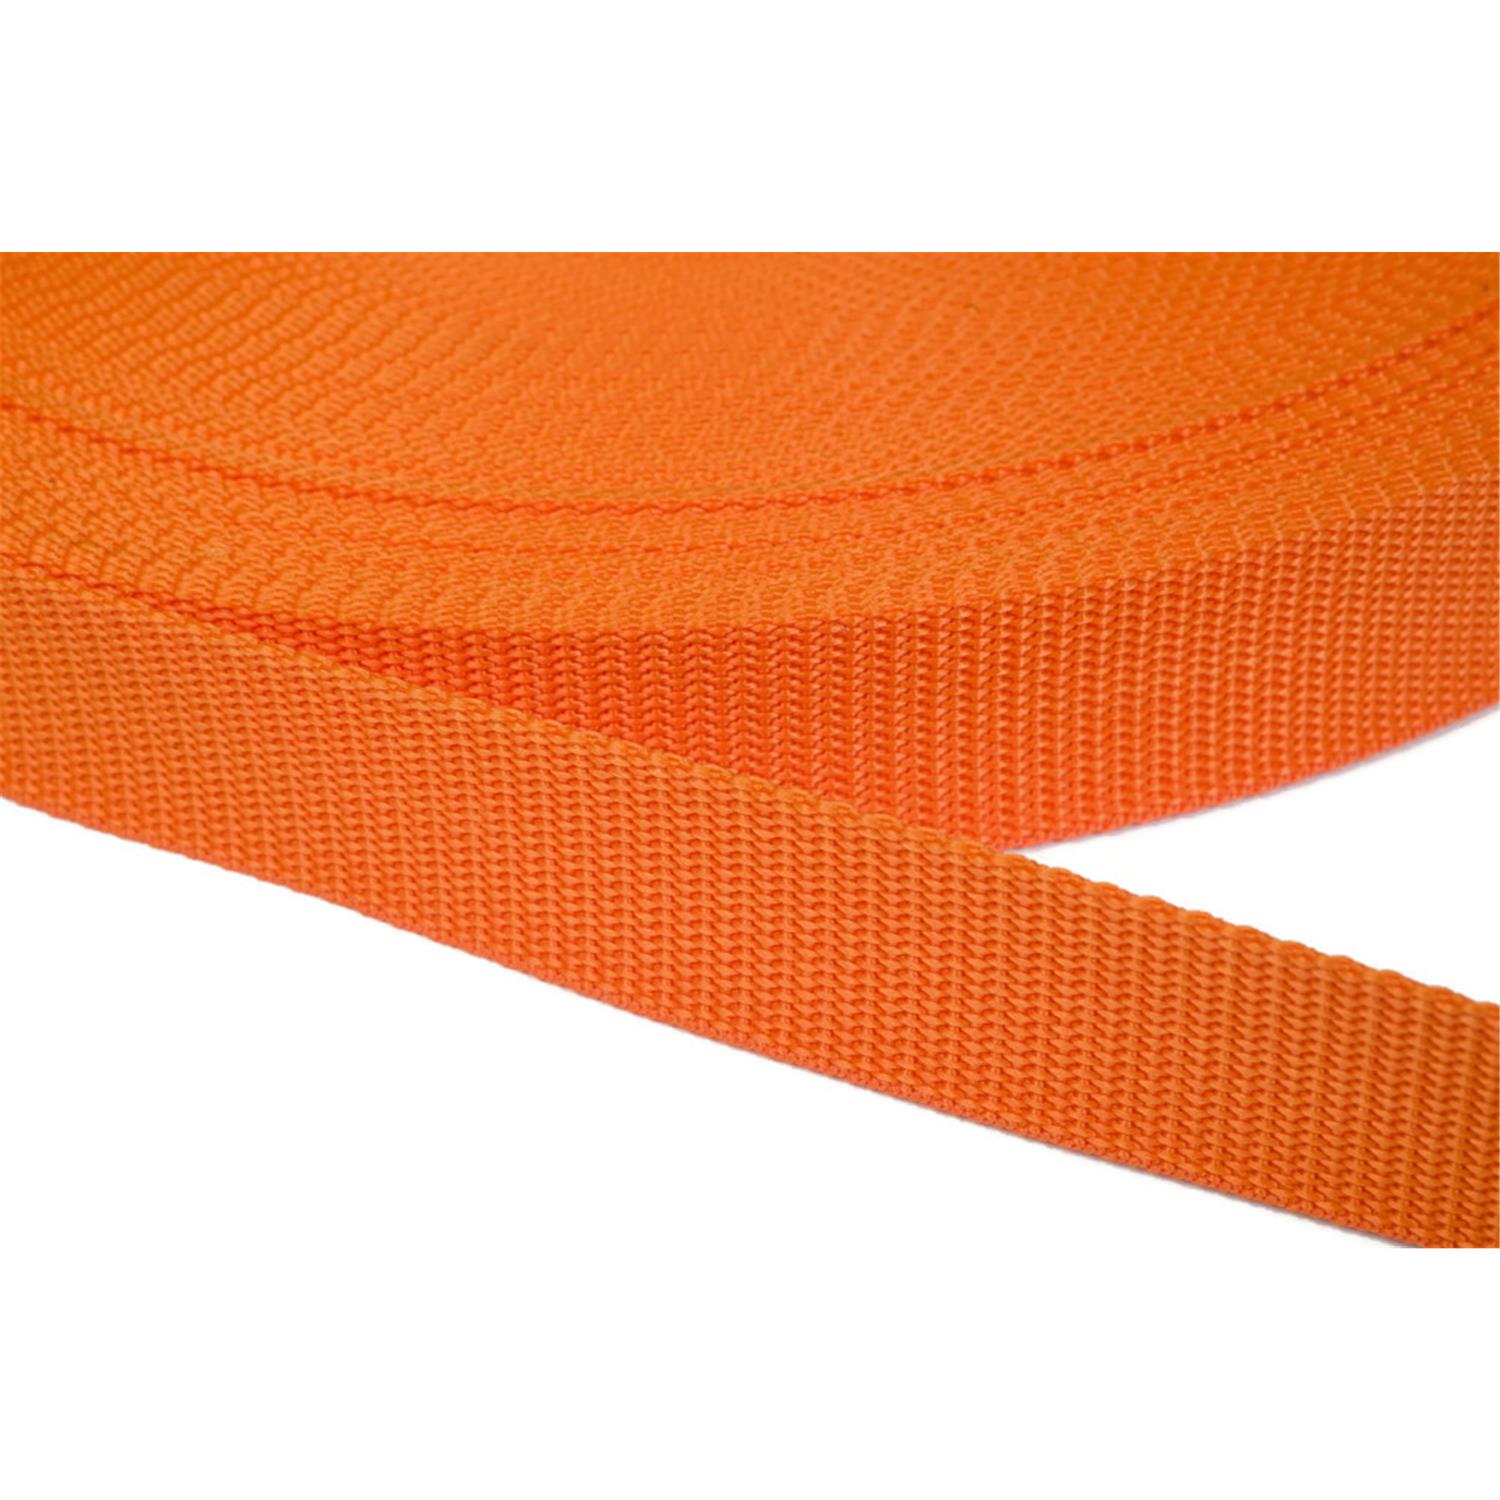 Gurtband 50mm breit aus Polypropylen in 41 Farben 11 - orange 6 Meter